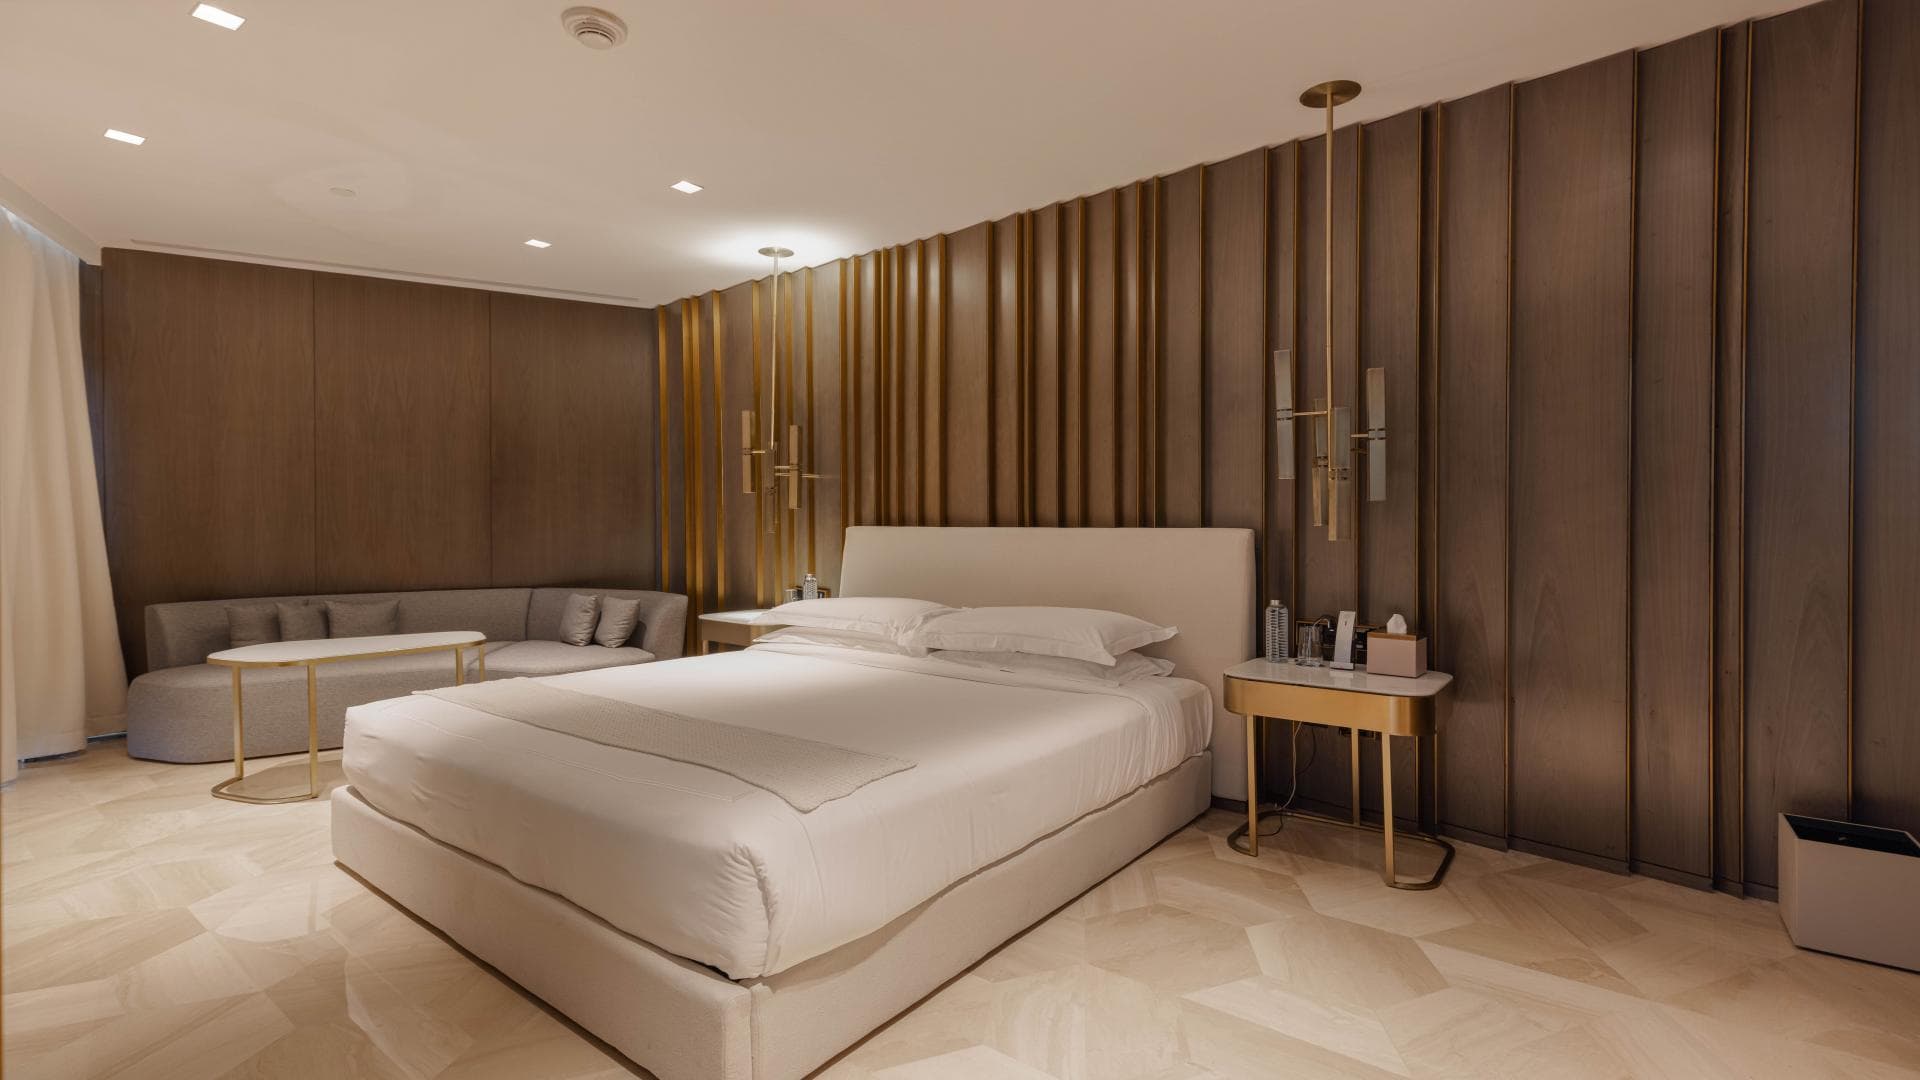 3 Bedroom Apartment For Sale Five Palm Jumeirah Lp19444 2d22754e02d9b400.jpg